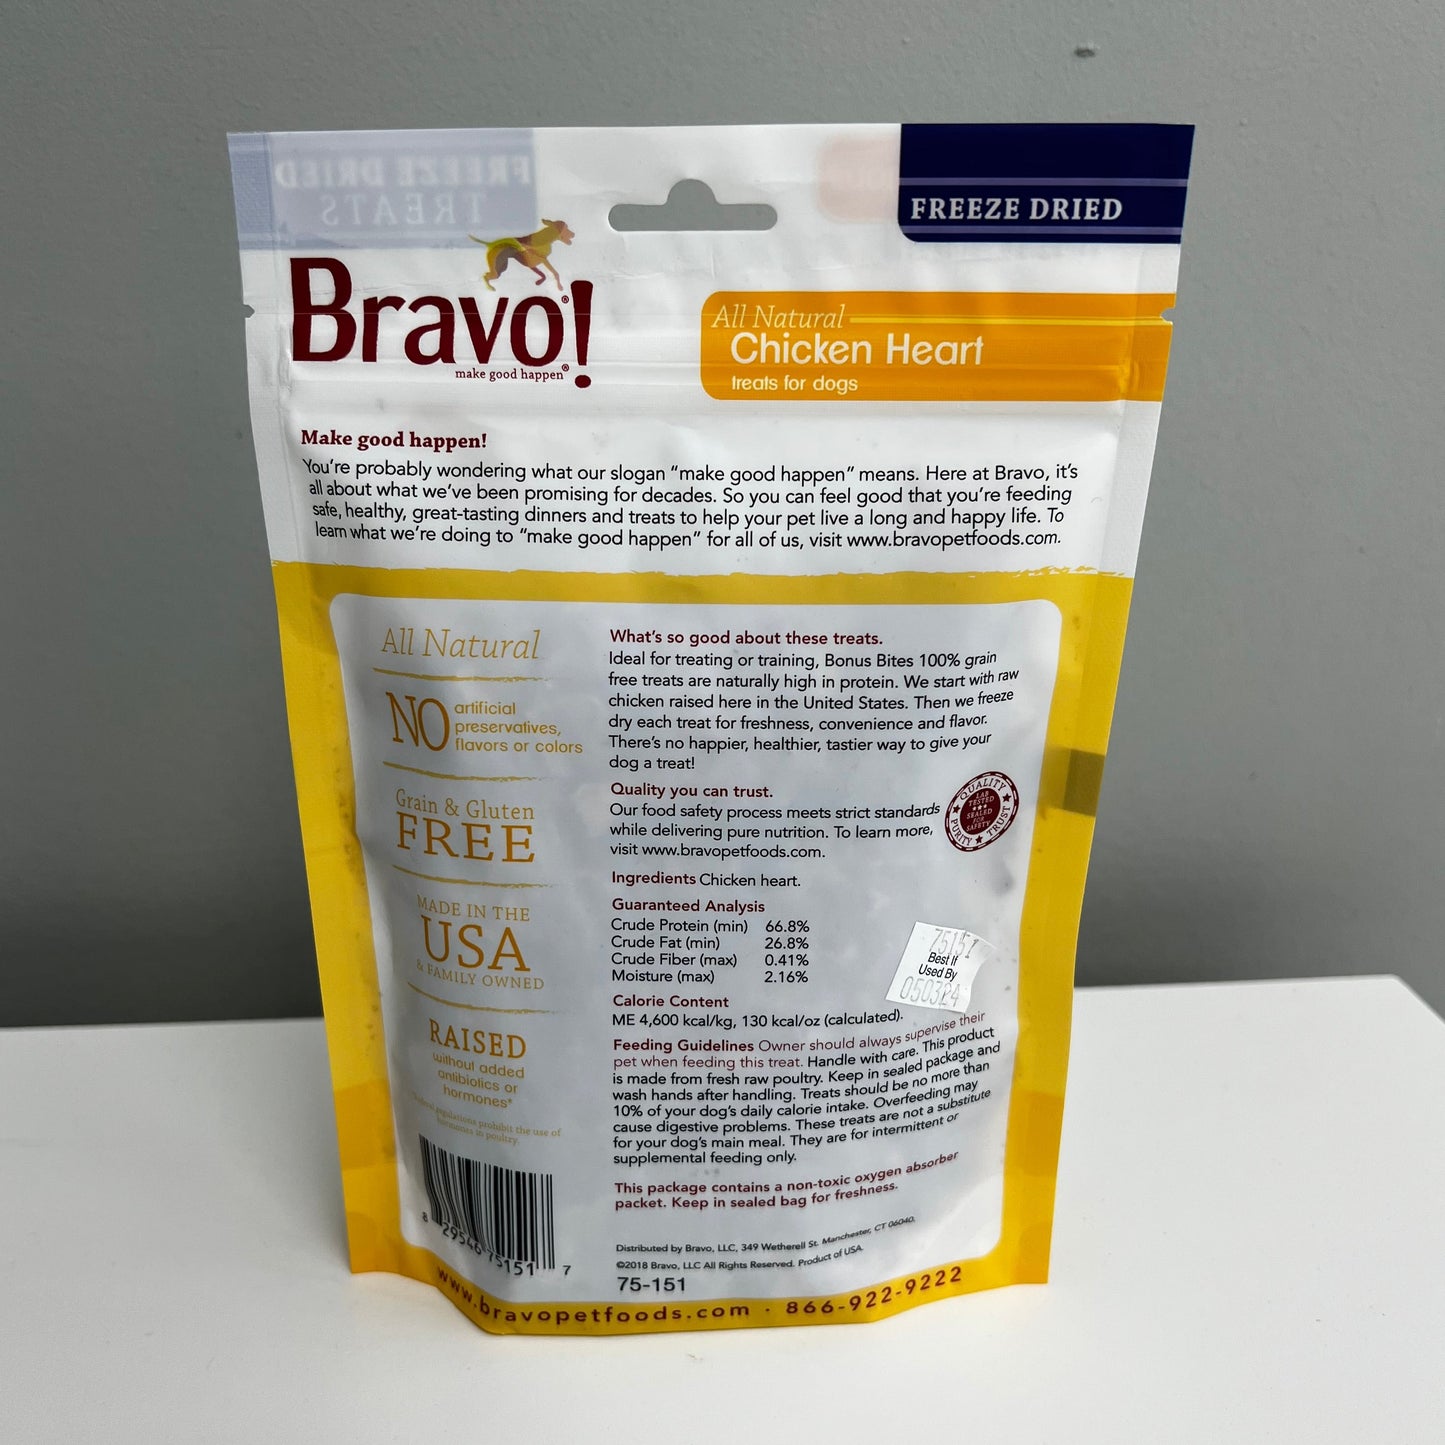 Bravo Raw Freeze-Dried Chicken Heart 3oz